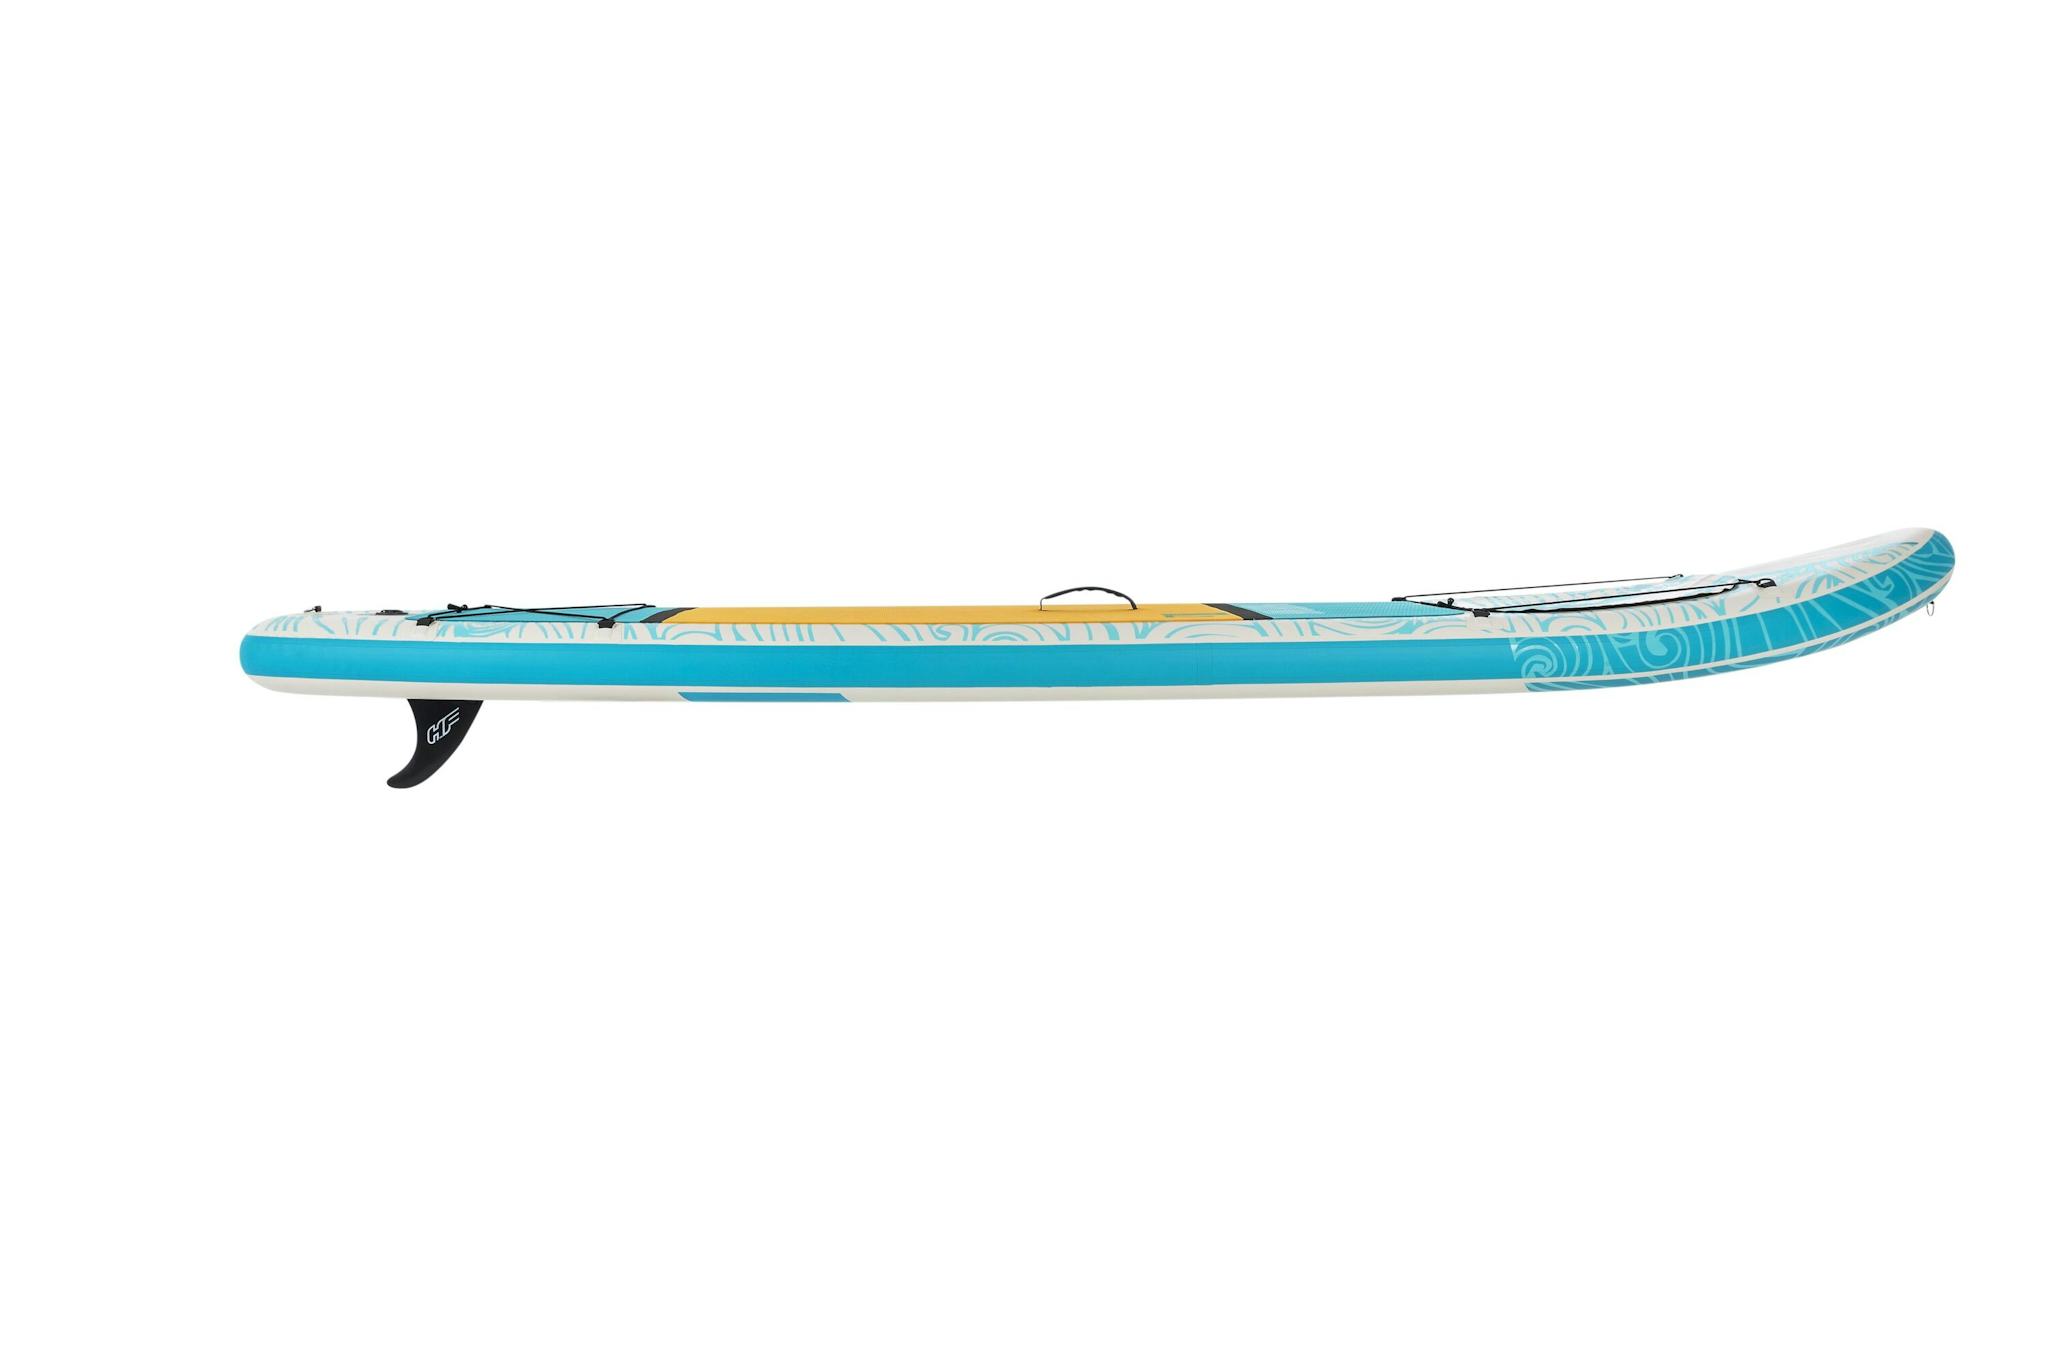 Sports d'eau Paddle gonflable Panorama Hydro-force™, 340 x 89 x 15 cm, 150 kg max, fenêtre transparente, poignées de transport, pompe, leash, sac de transport et pagaie Bestway 3